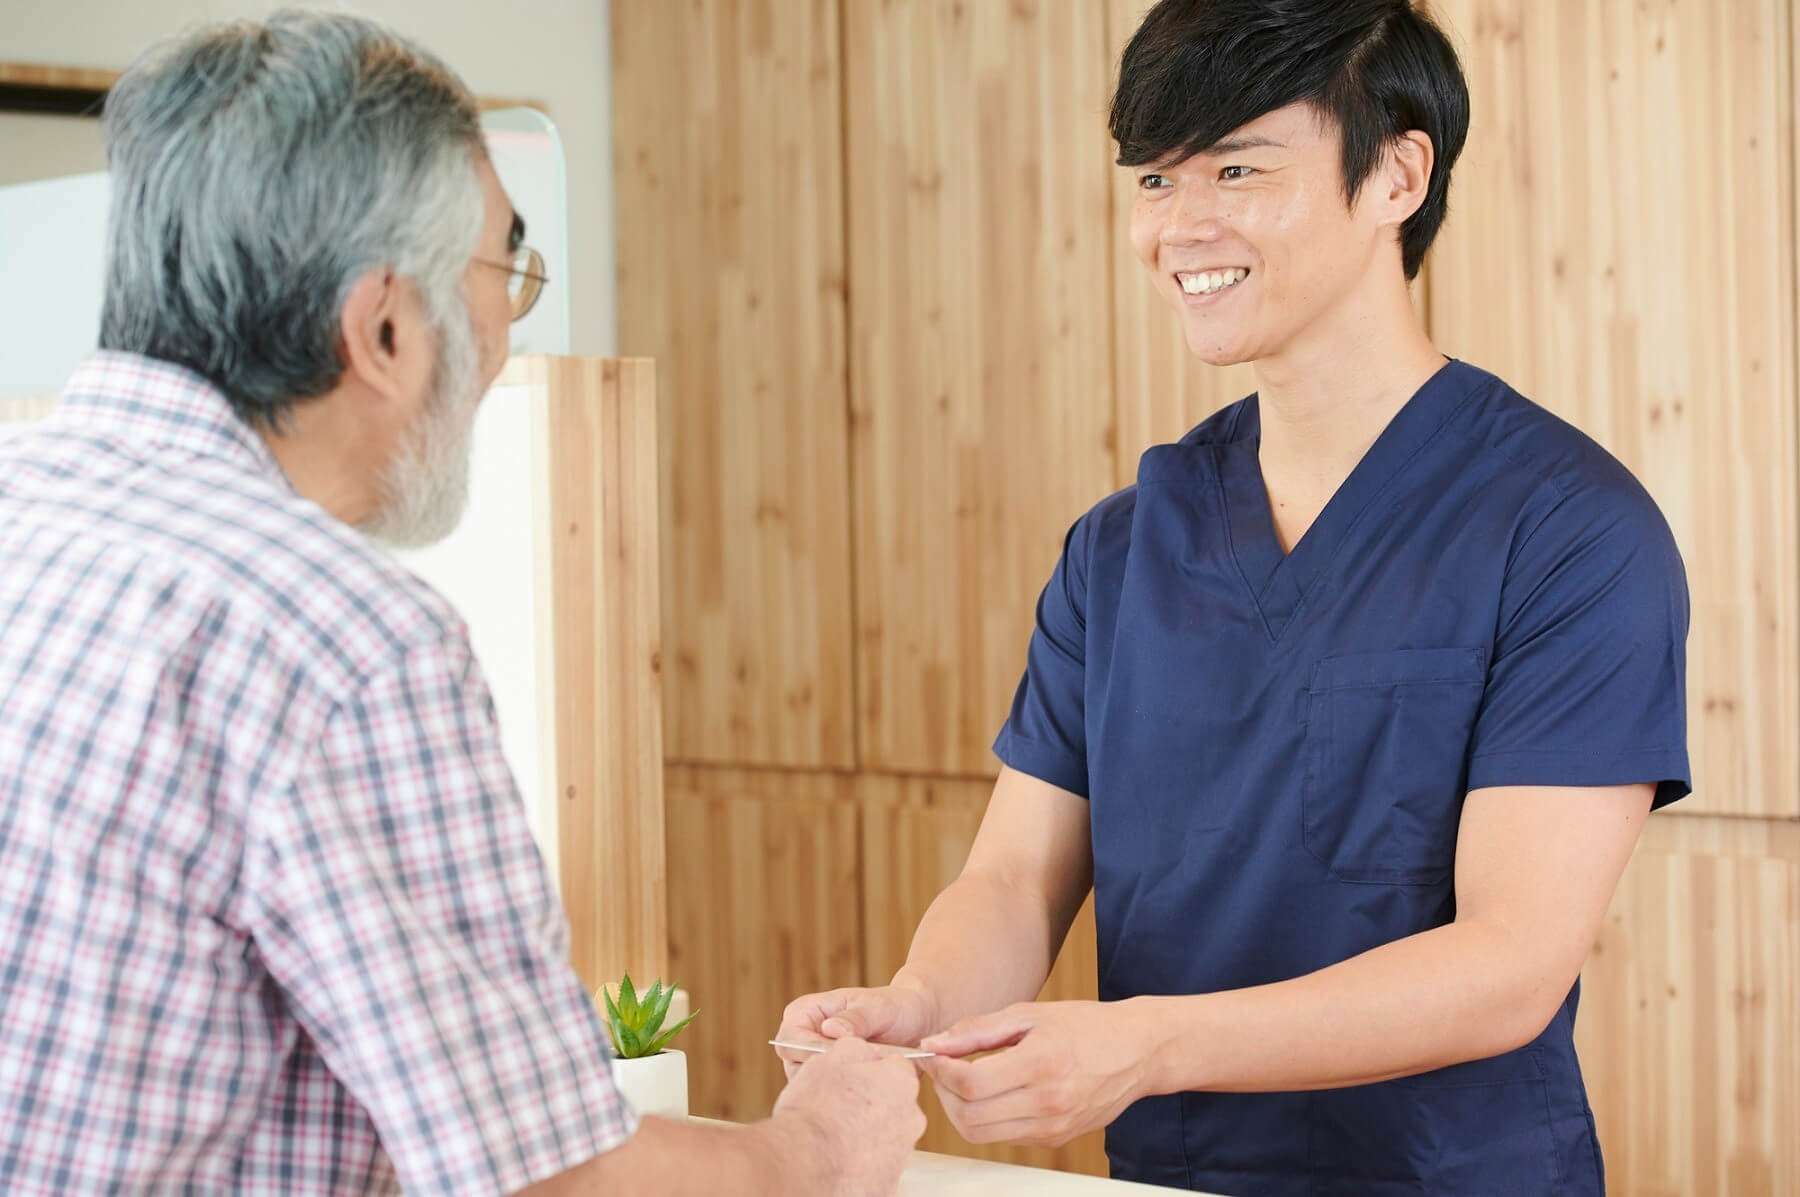 北海道帯広市の冨永整骨院は各種健康保険を適用した施術を承っています